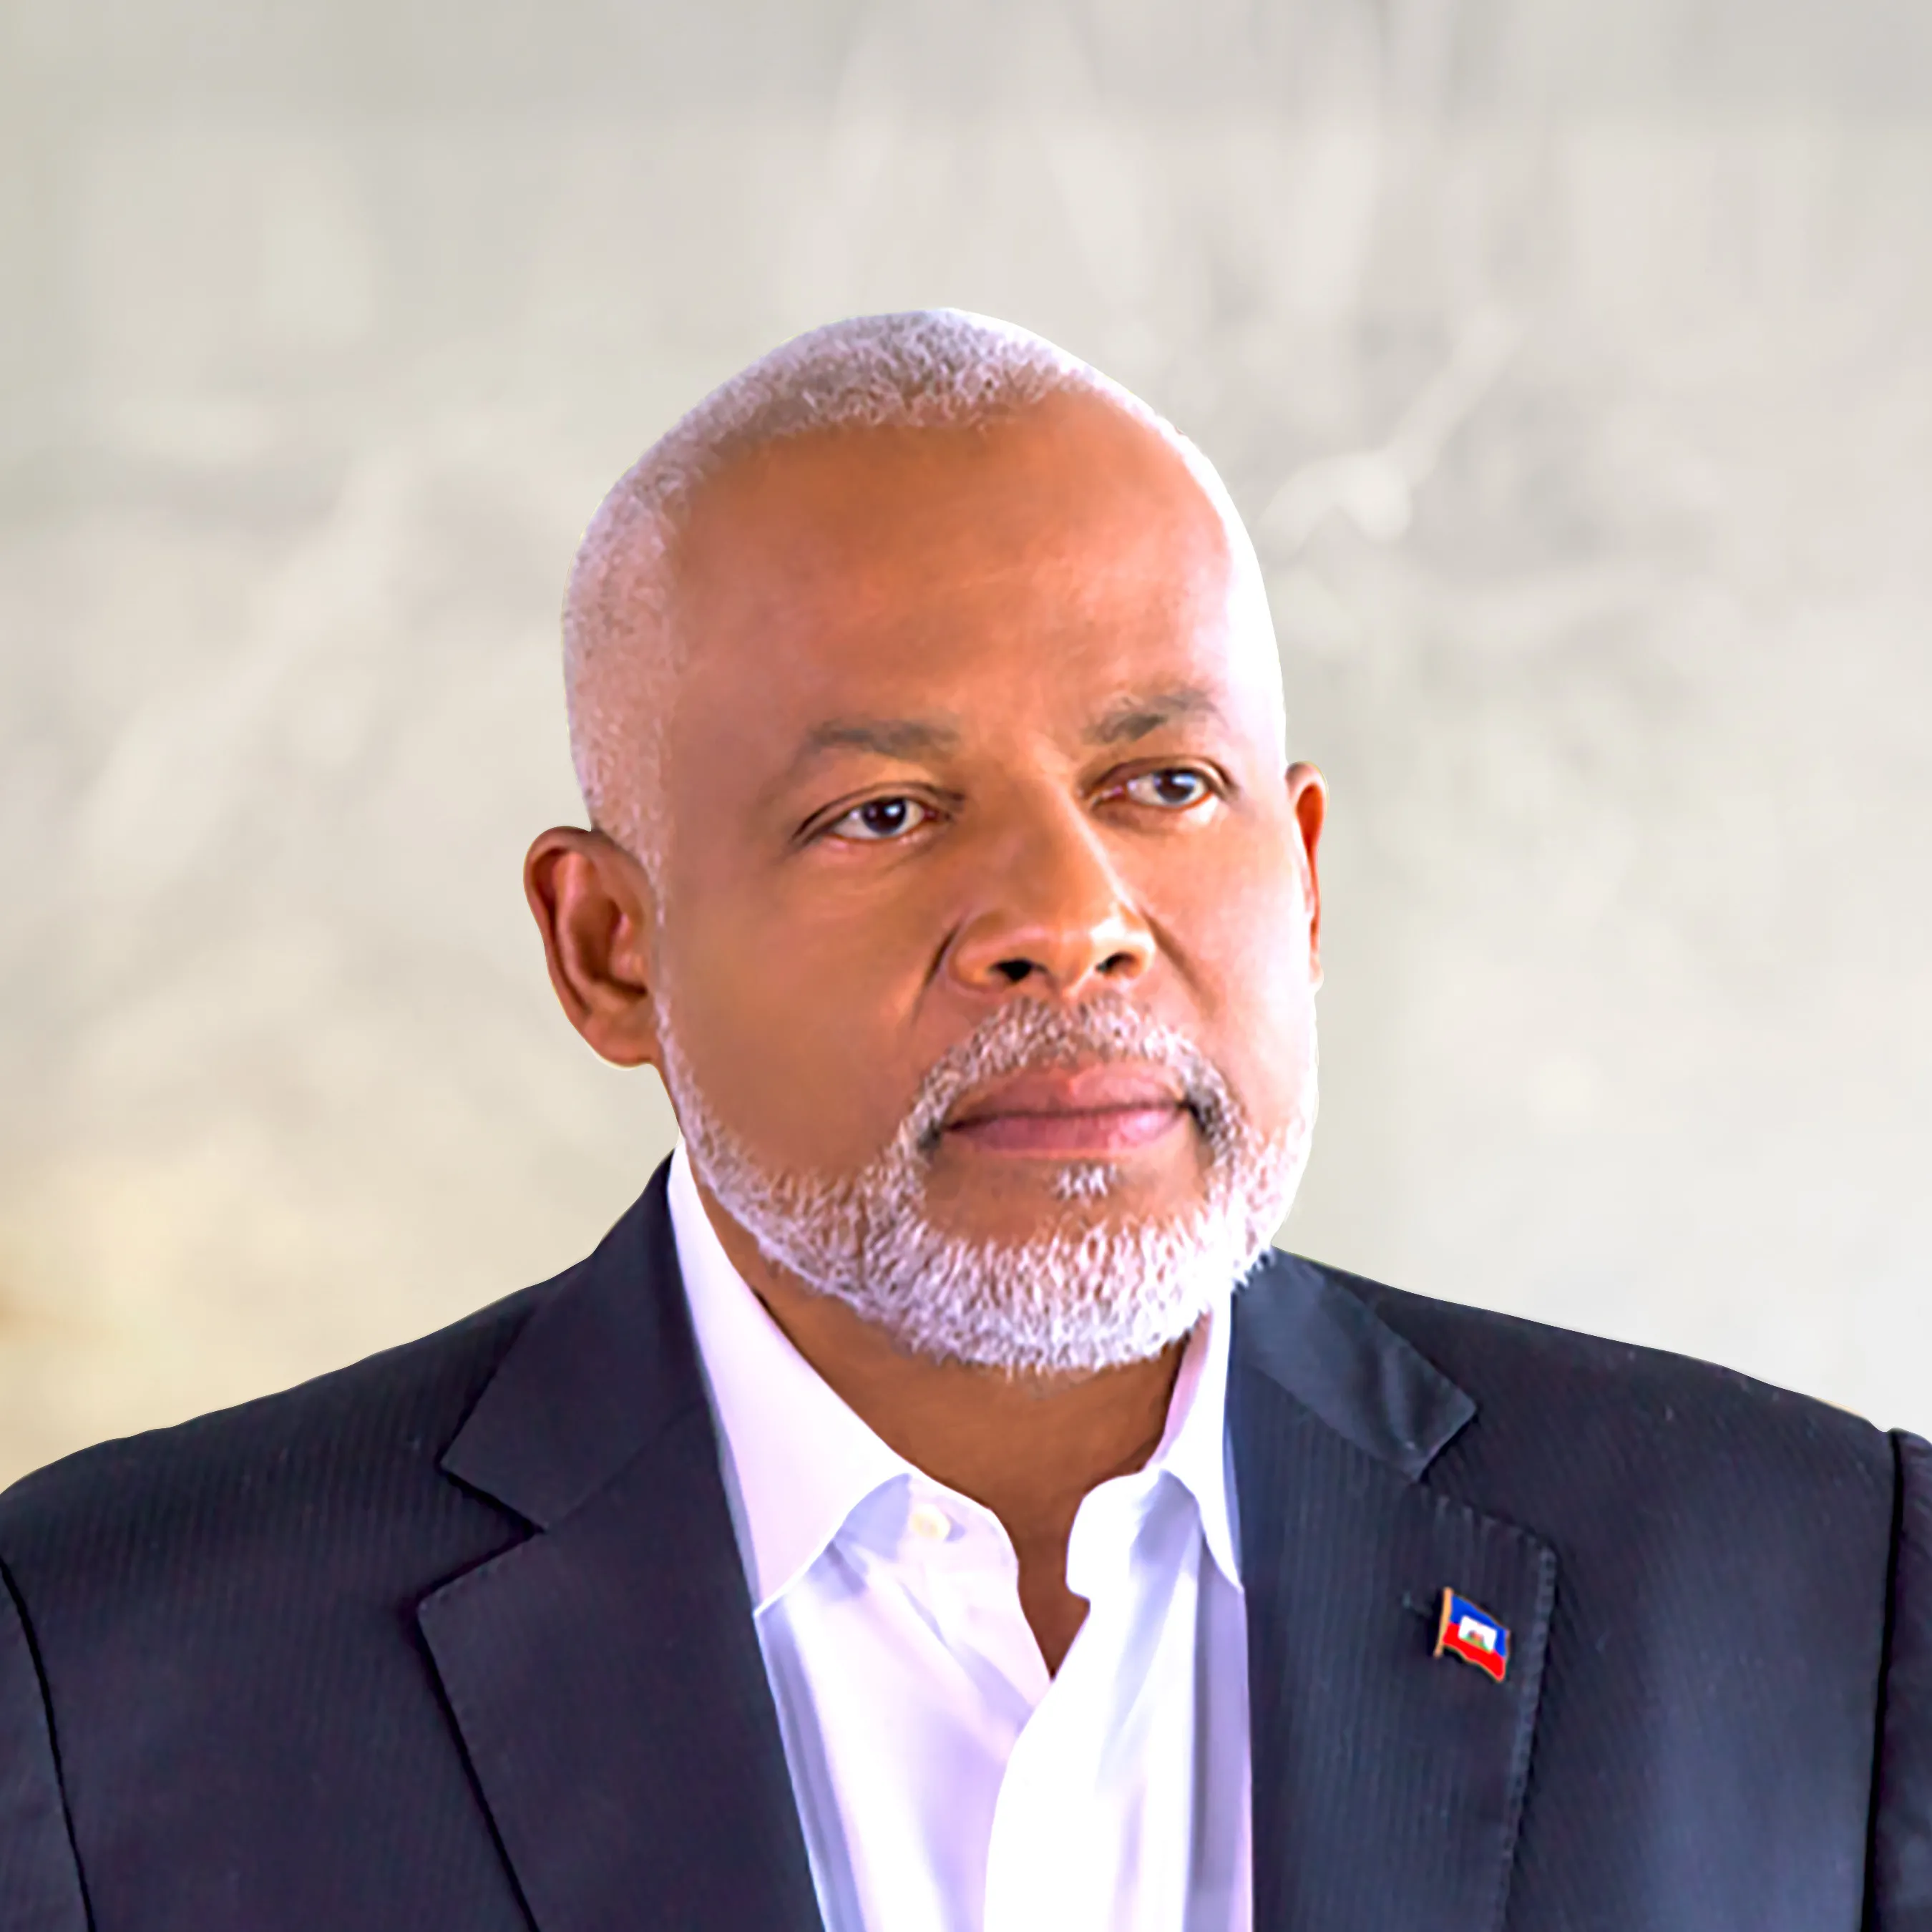 Asesinan al excandidato presidencial de Haití Eric Jean Baptiste